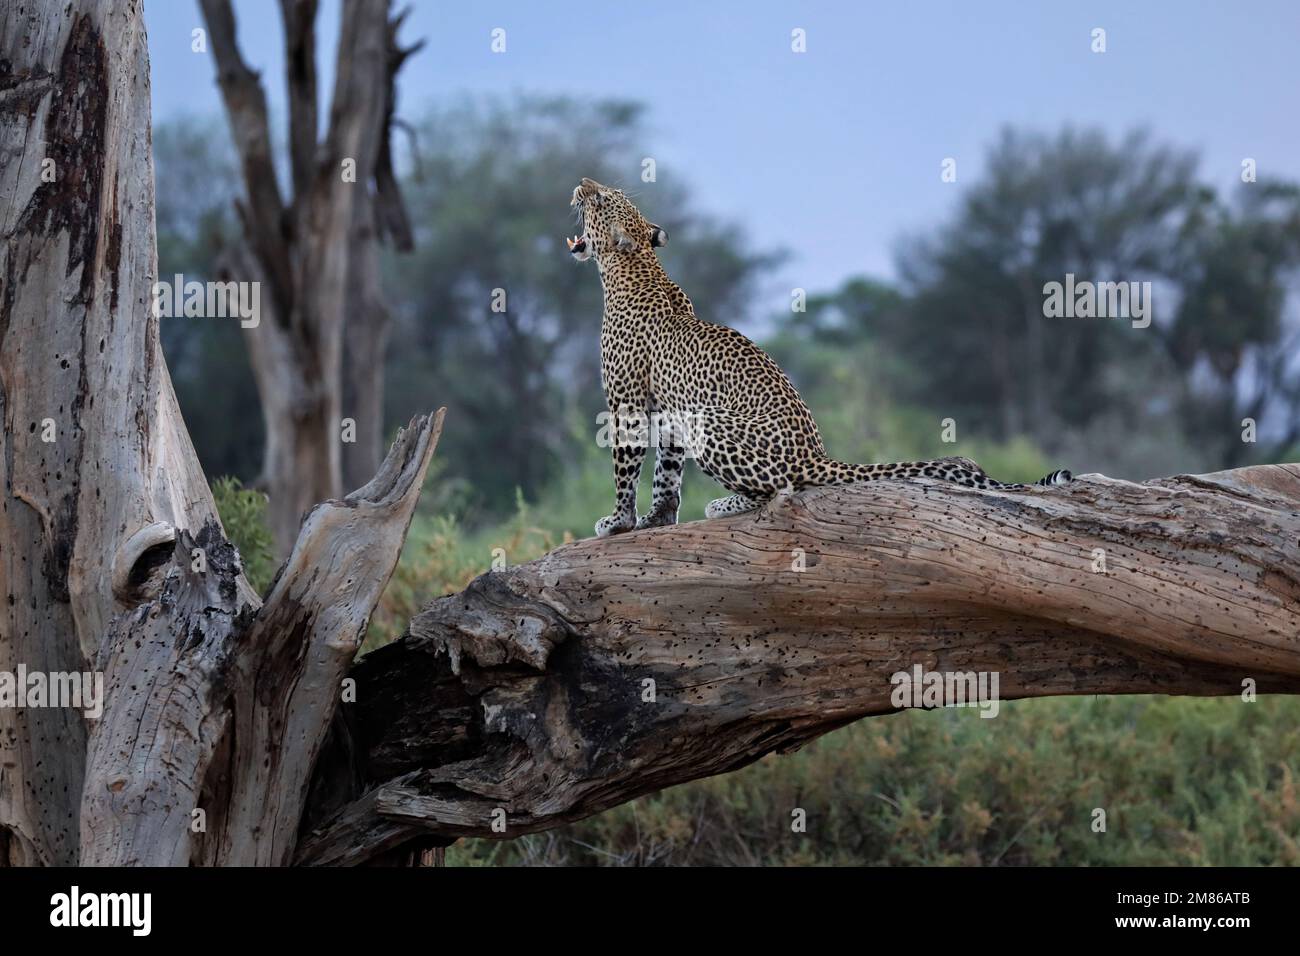 Ein Leopard sitzt auf einem dicken Ast/Stamm und gähnt. Er ist kurz davor, abends auf die Jagd zu gehen - Kenia, Samburu National Reserve Stockfoto